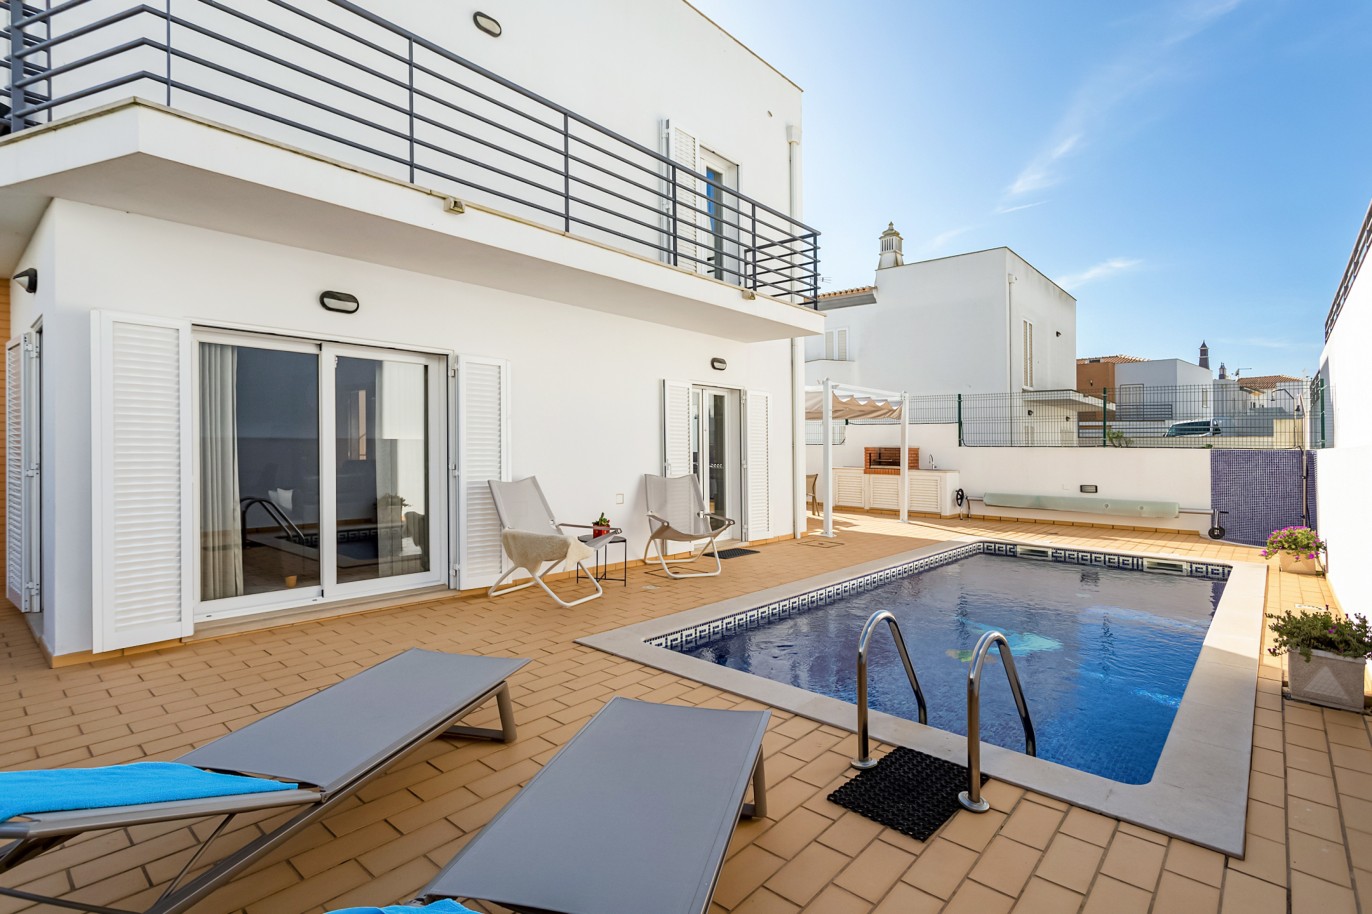 Moradia isolada V4 com piscina para venda em Albufeira, Algarve_214369